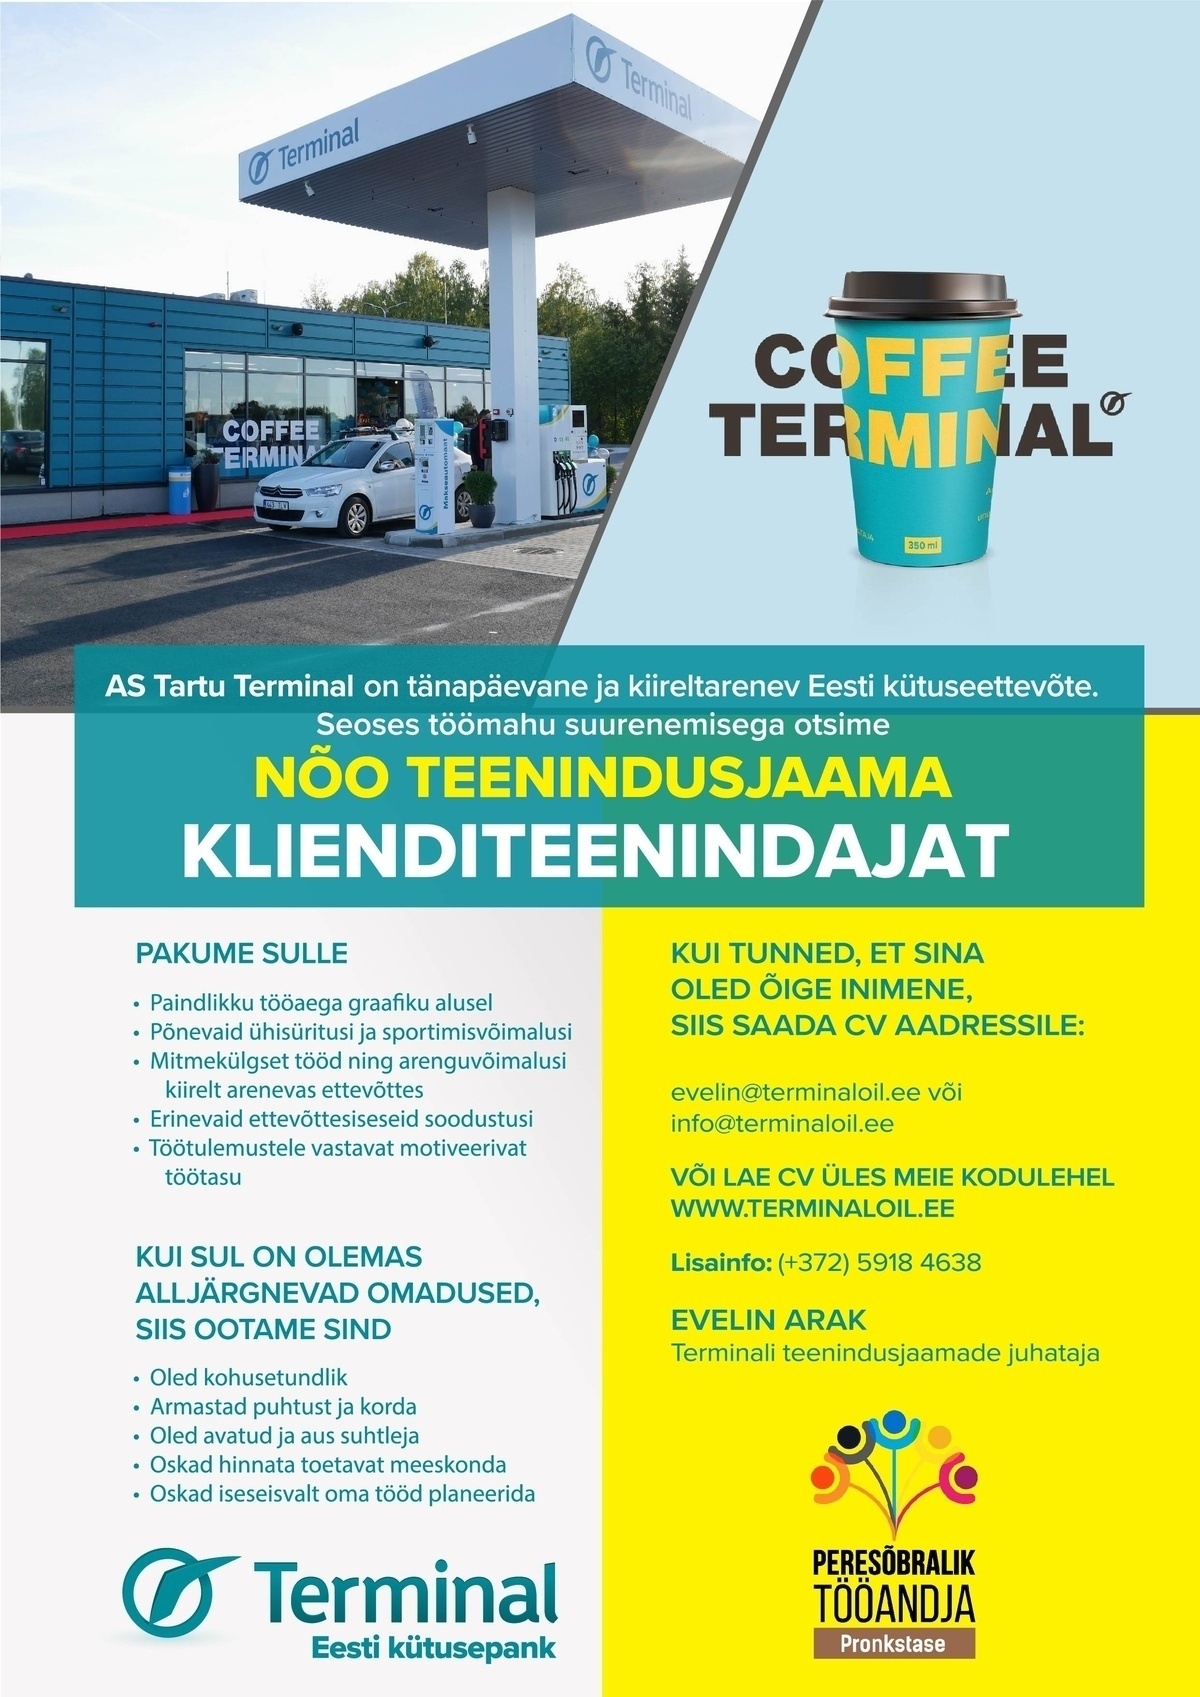 Tartu Terminal AS Klienditeenindaja Nõo teenindusjaama 